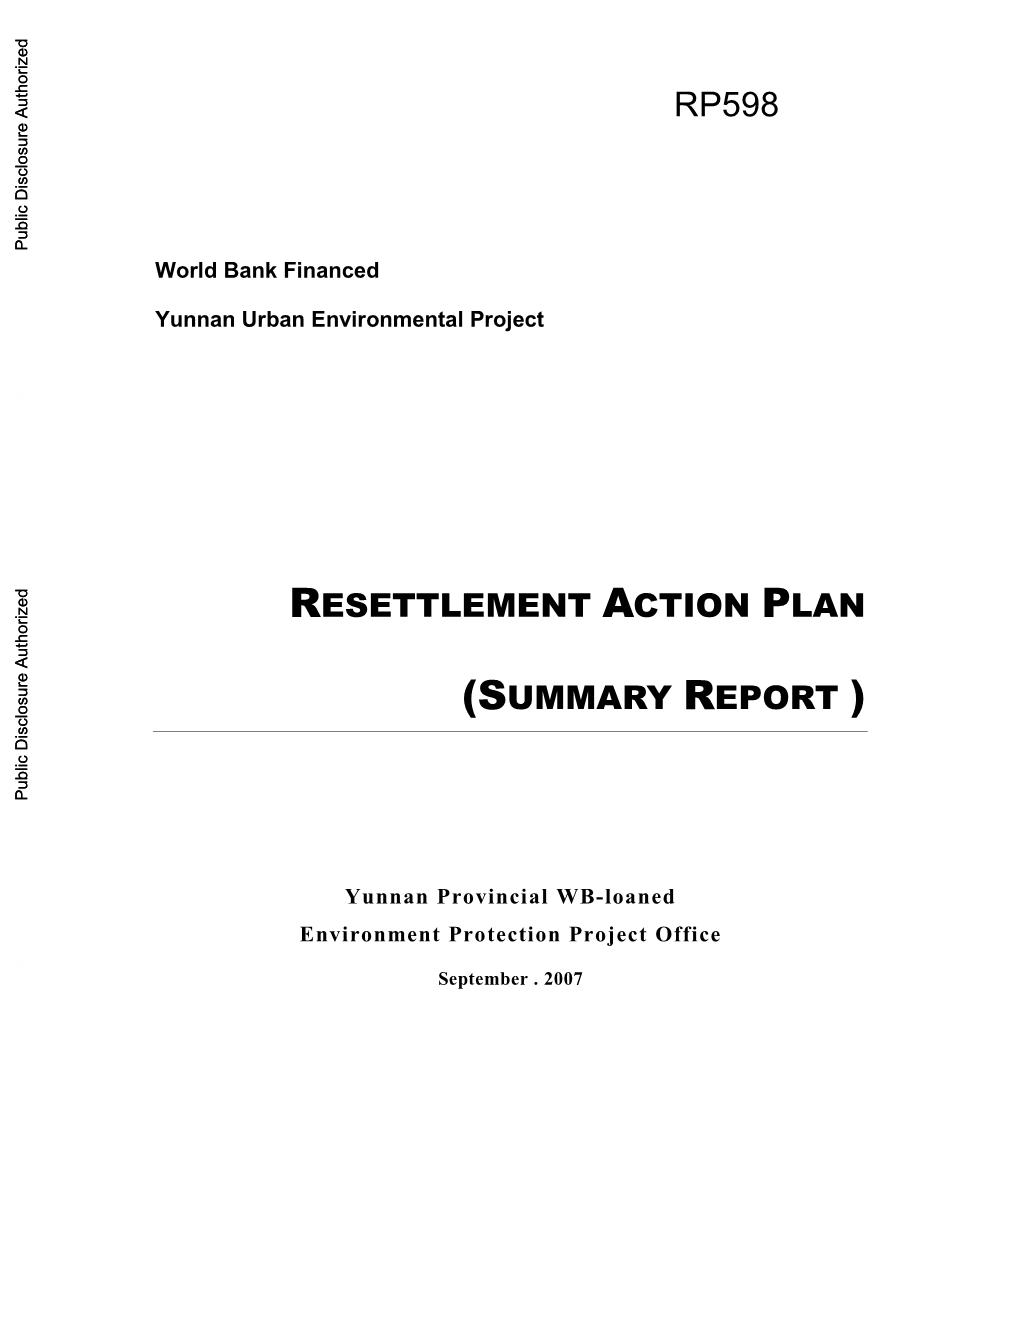 Resettlement Implementation Plan